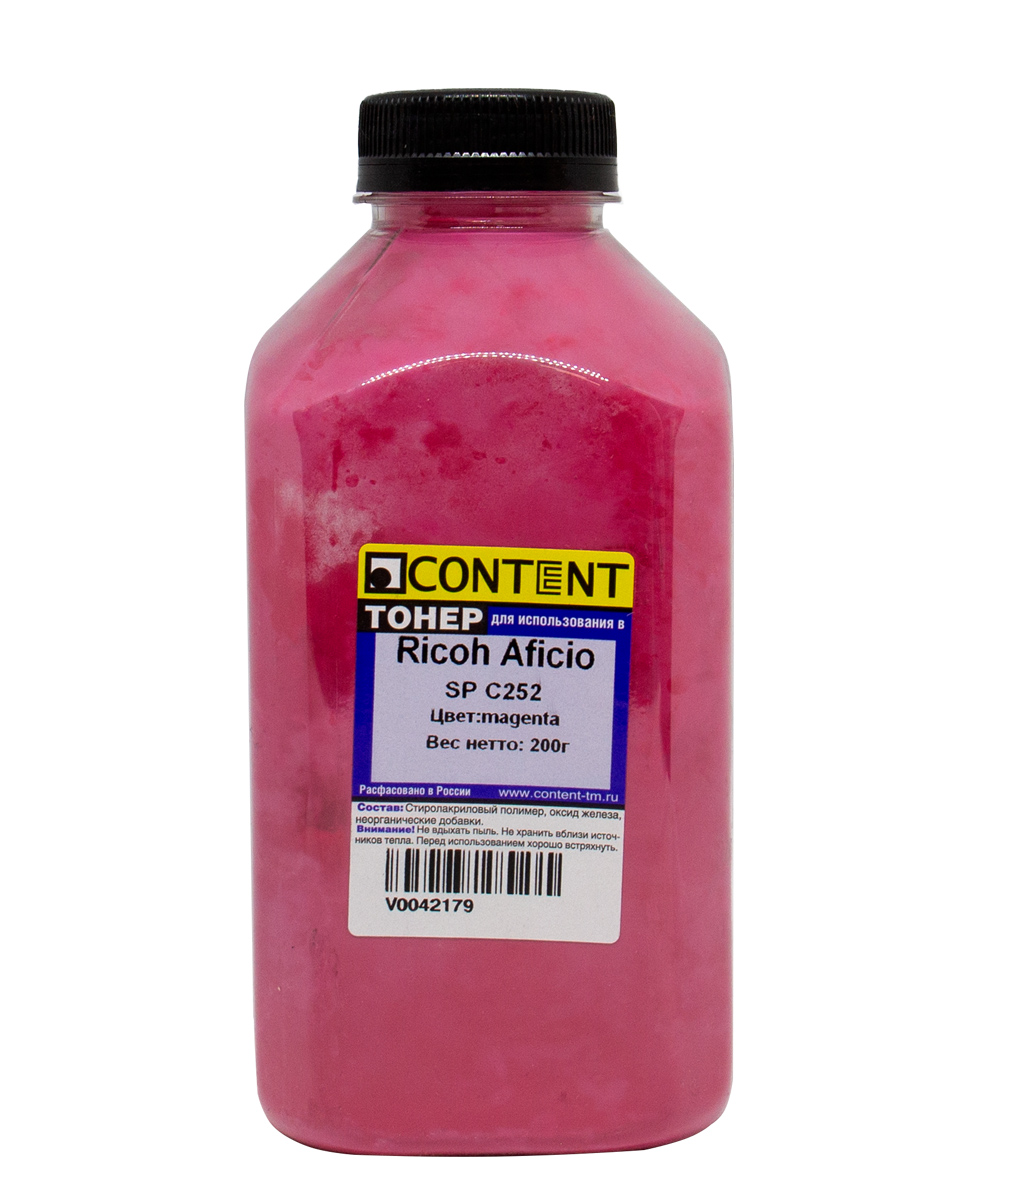 Тонер Content, бутыль 200 г, пурпурный, совместимый для Ricoh Aficio SP C252 (V0042179)